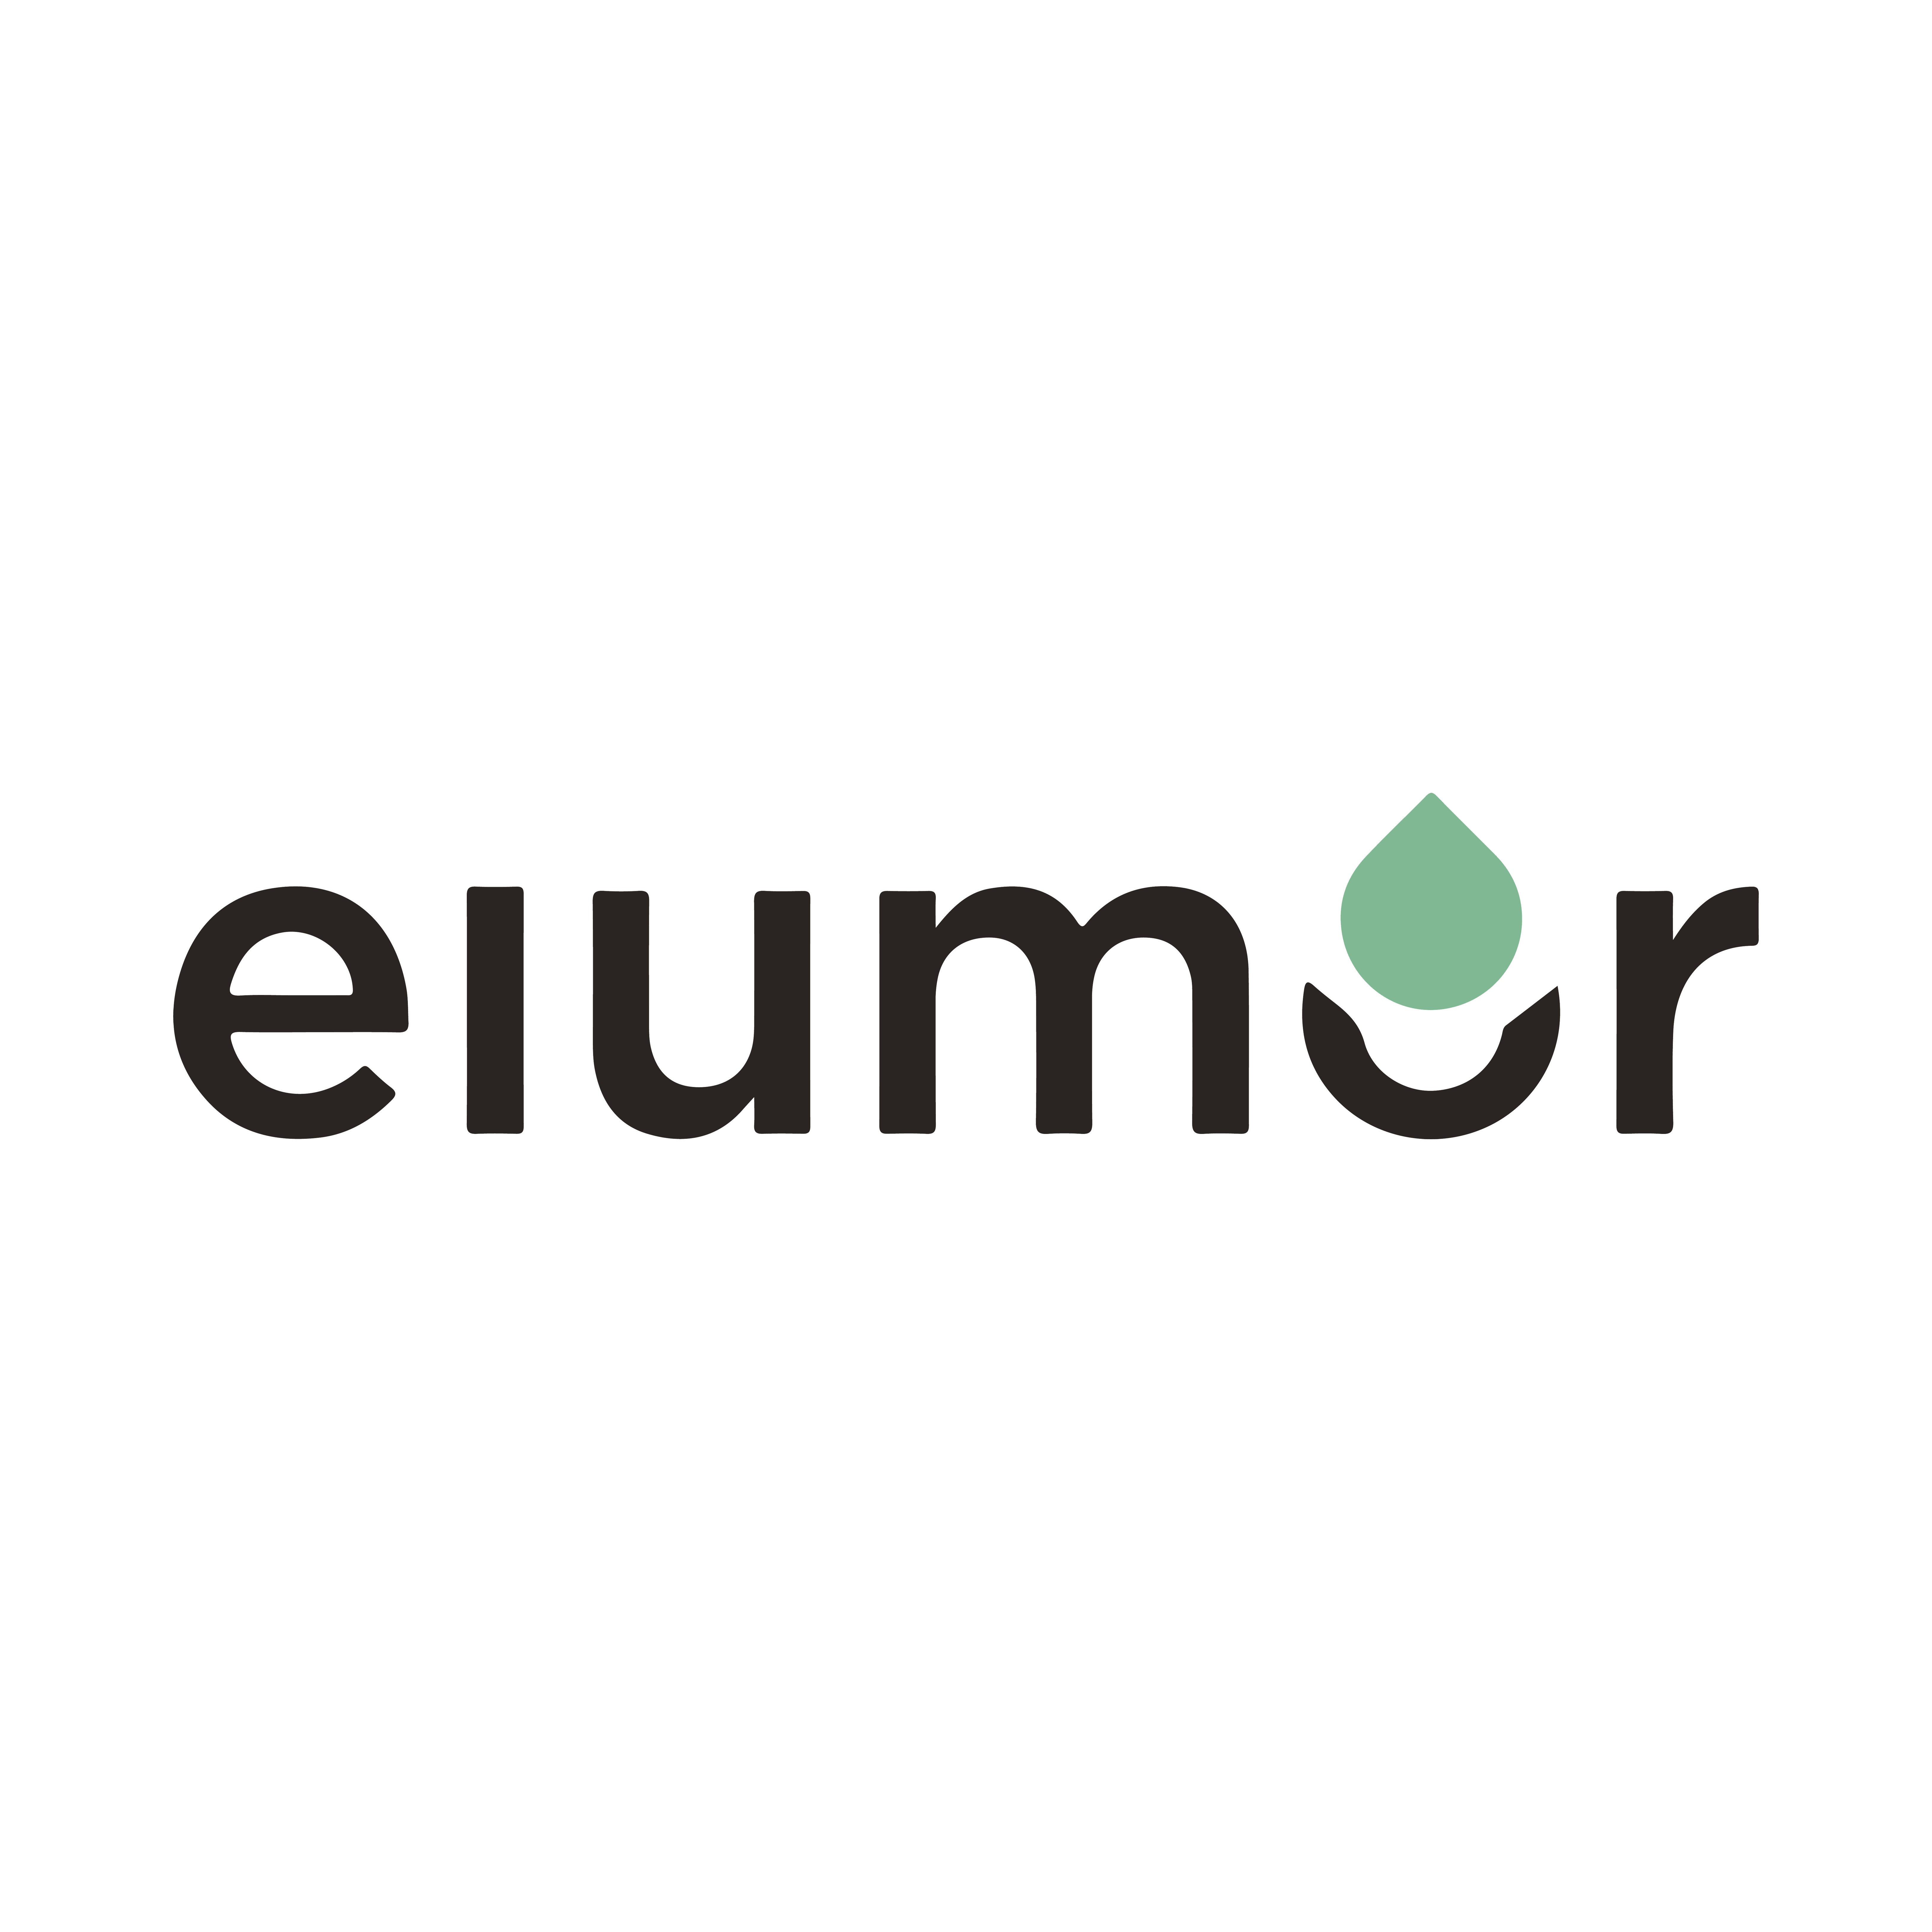 Elumor Logo